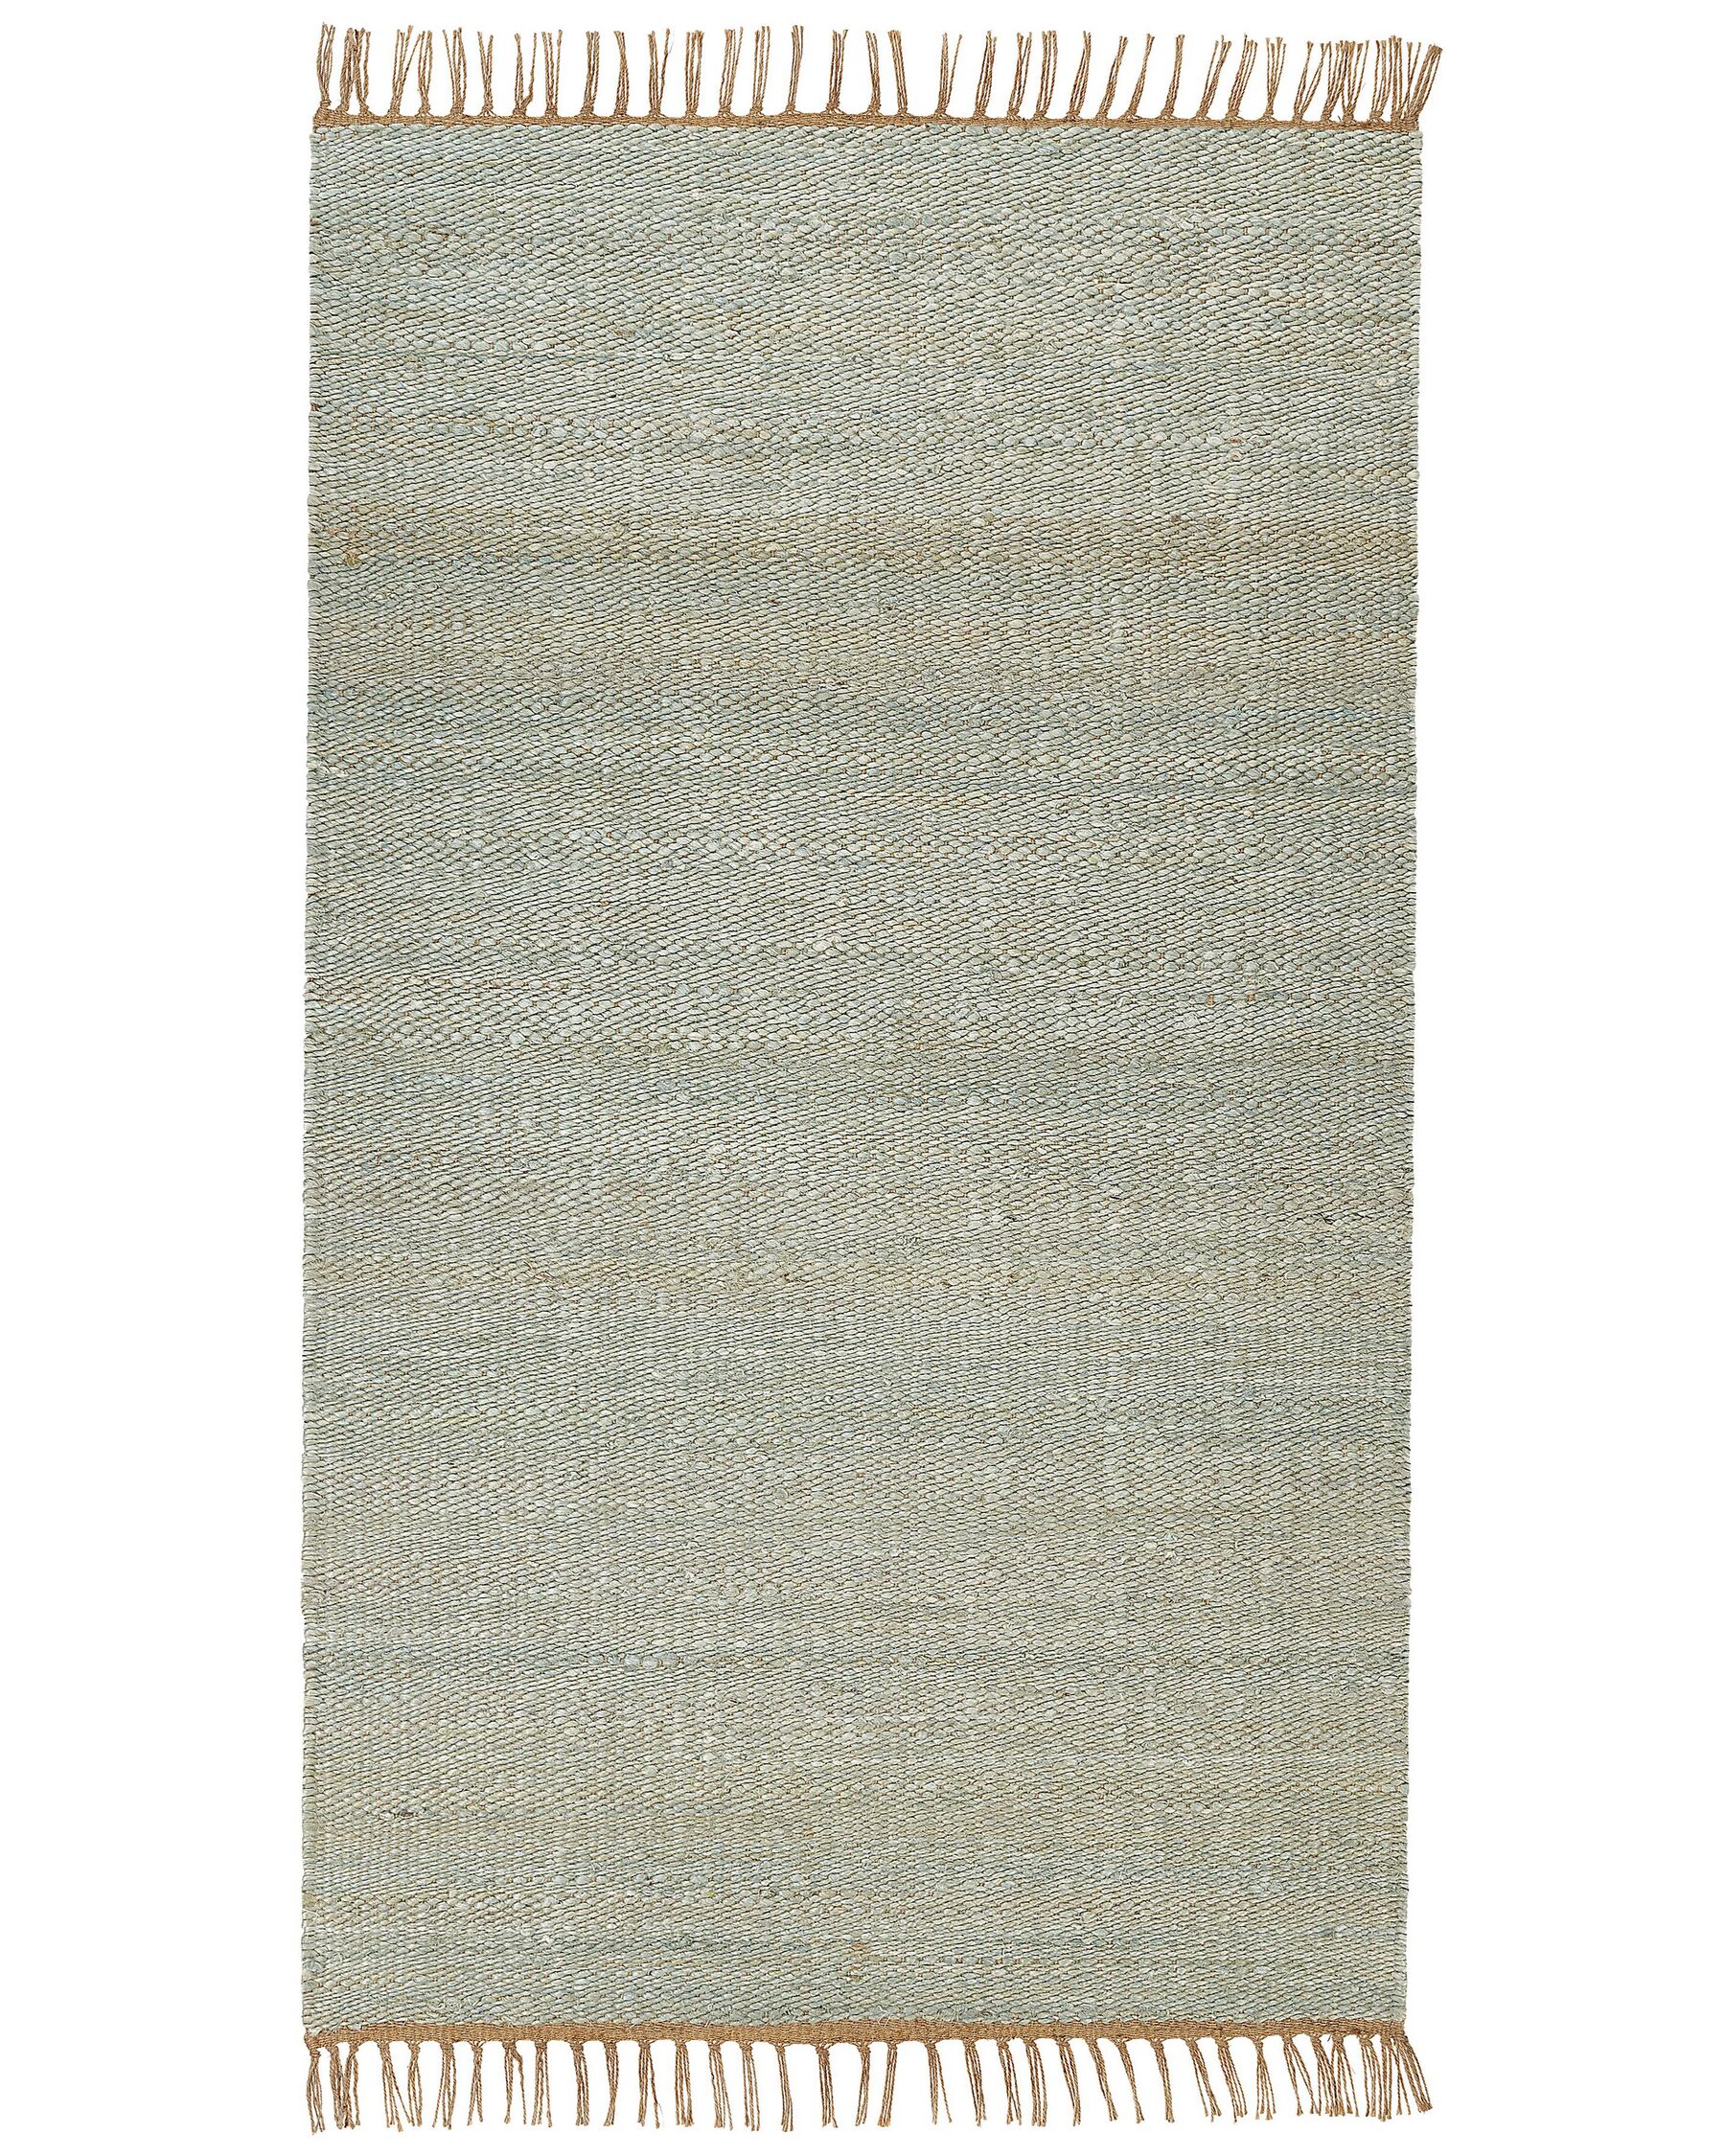 Tappeto iuta verde chiaro e marrone 80 x 150 cm LUNIA_846269